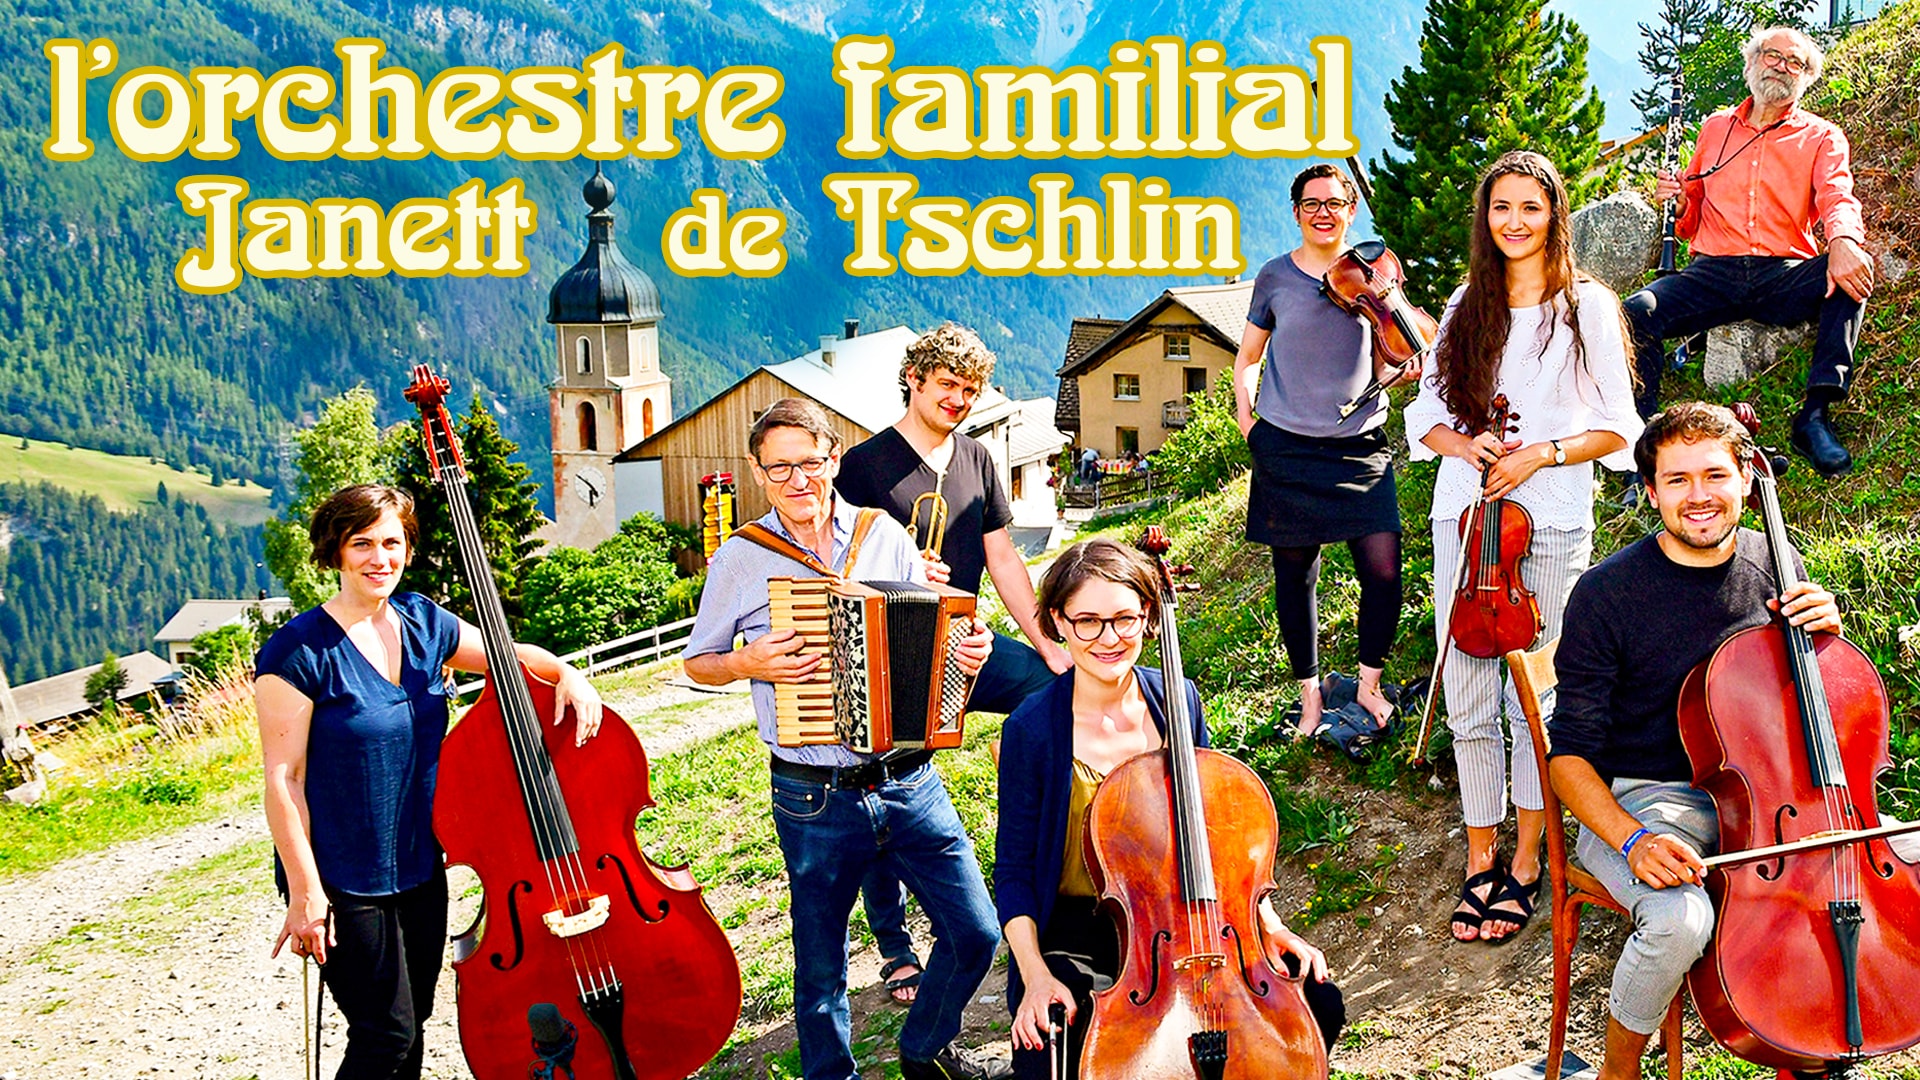 L'orchestre familial Janett de Tschlin